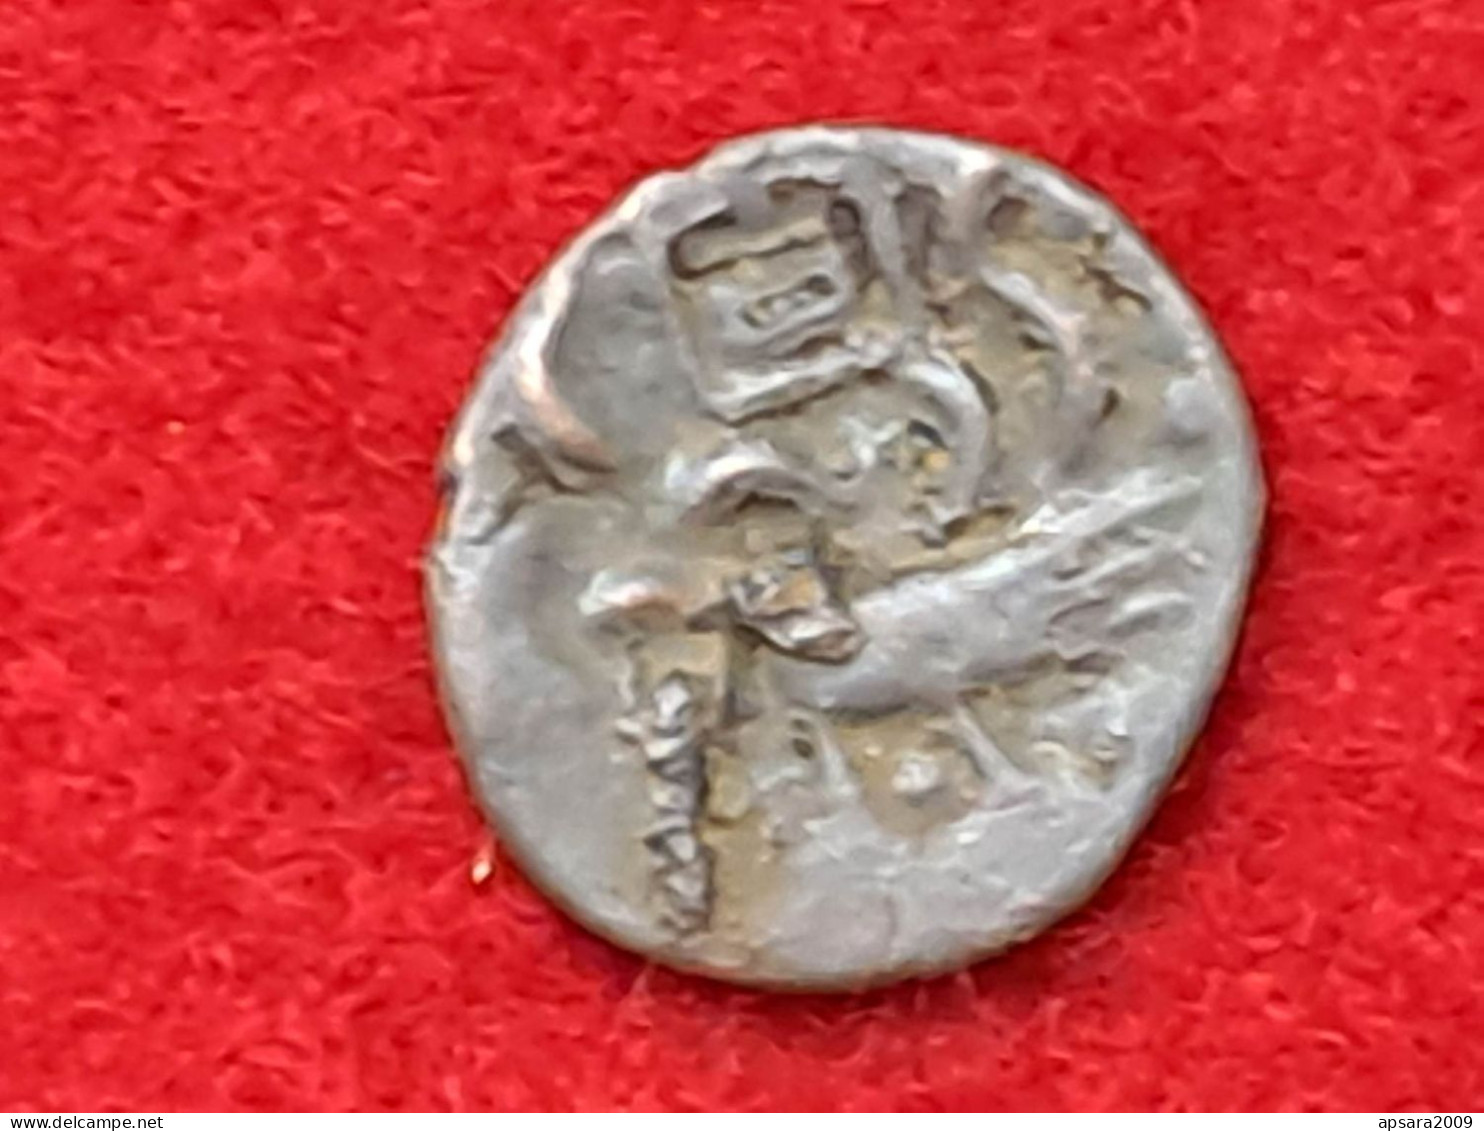 CAMBODGE / CAMBODIA/ Coin Copper Khmer Antique - Cambodia